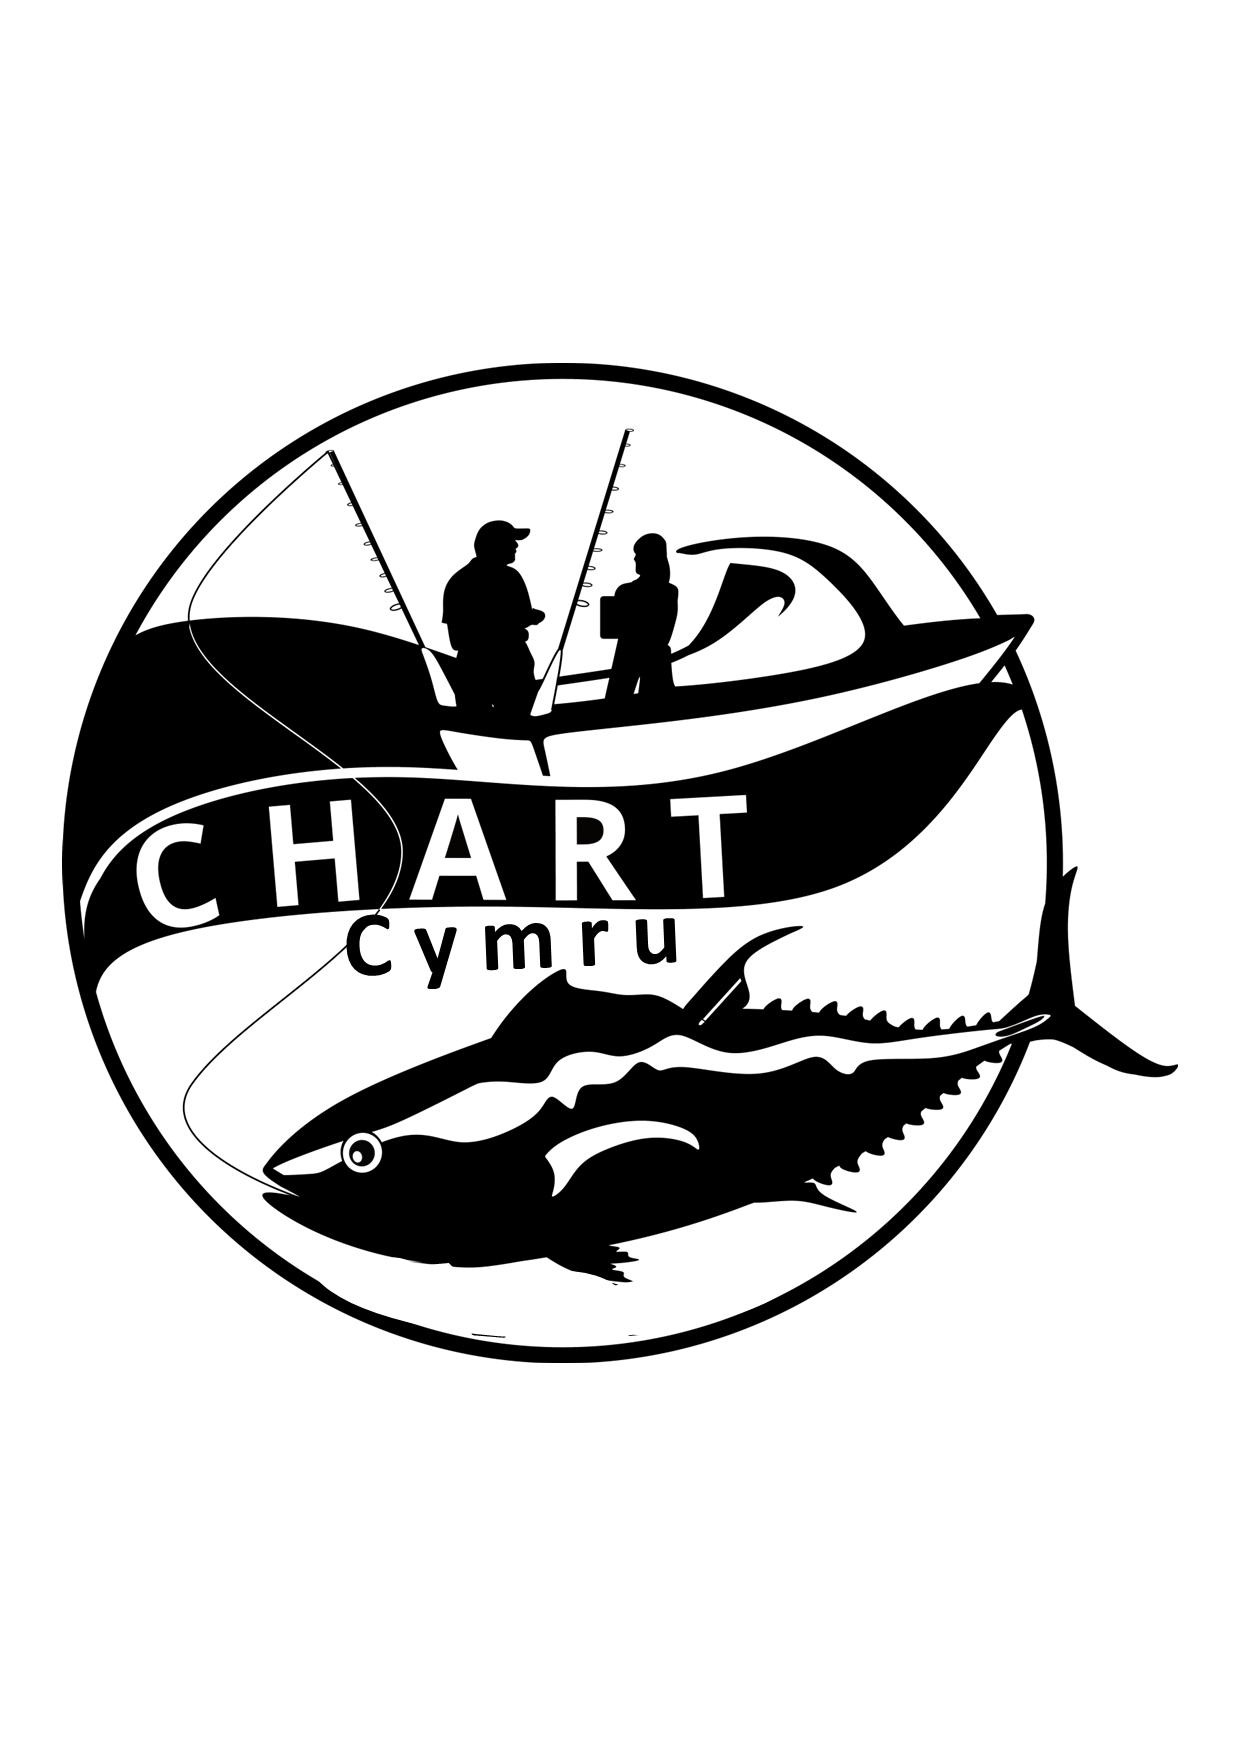 Chart cymru logo